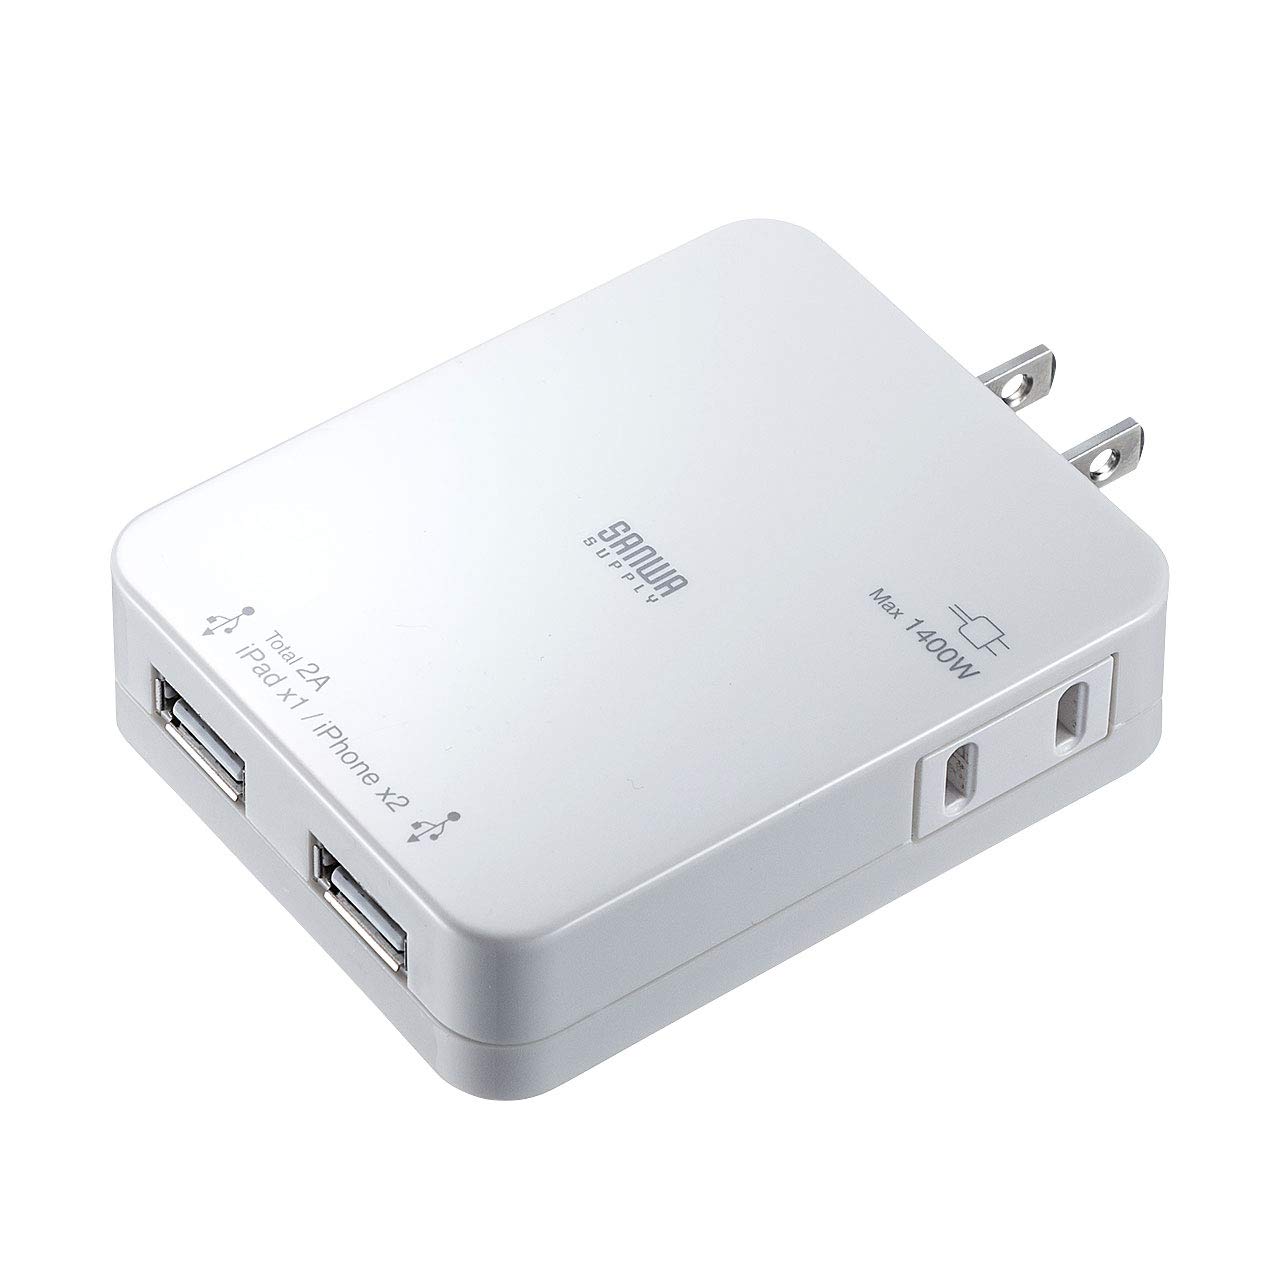 サンワサプライ USB充電タップ型ACアダプタ AC差込口×1/USBポート×2(合計最大出力2.1A) ホワイト ACA-IP25W